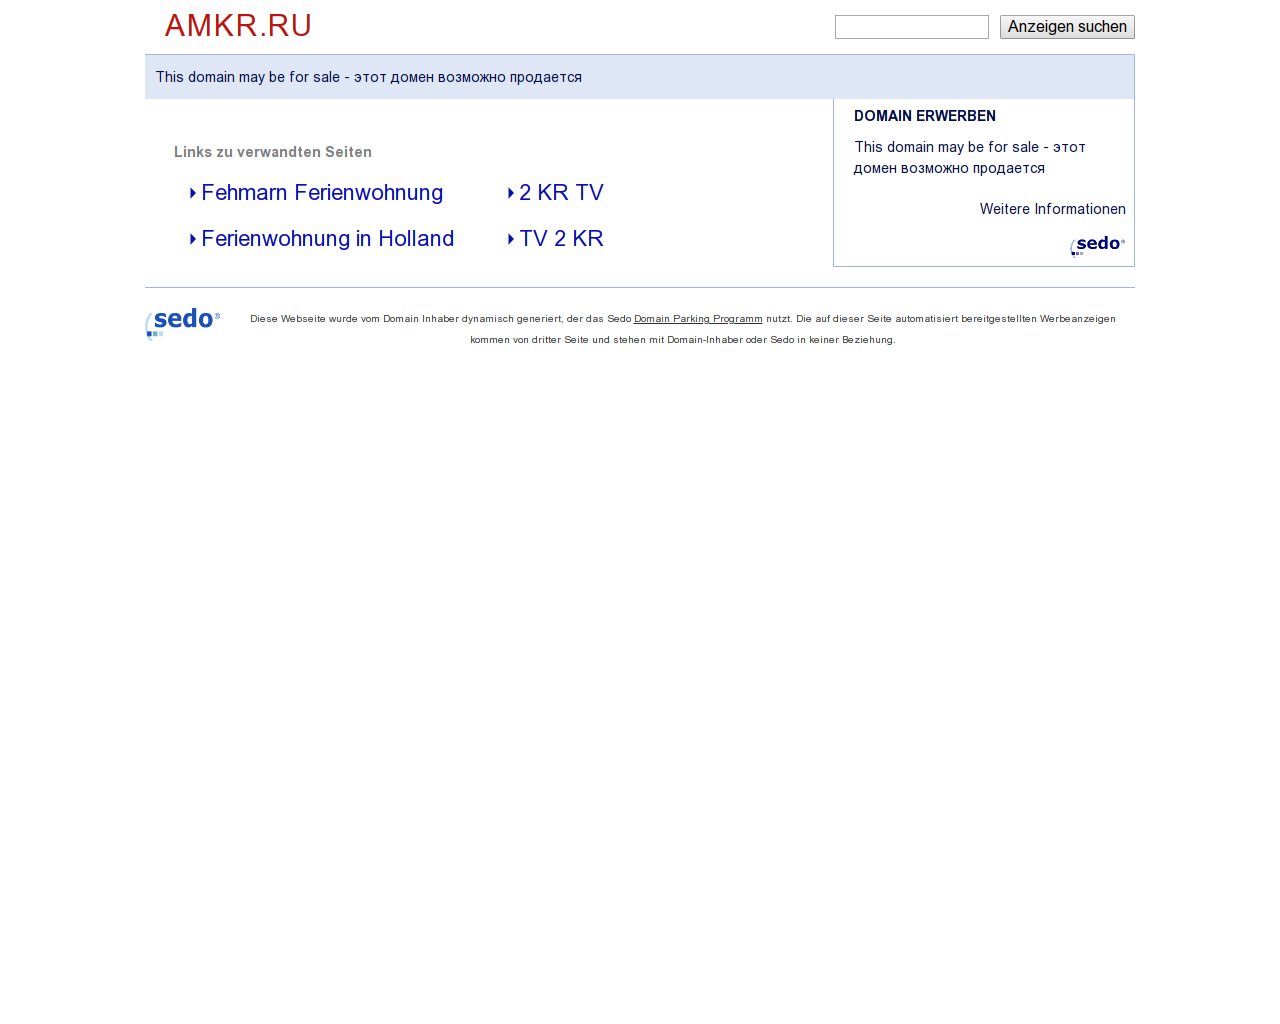 Изображение сайта amkr.ru в разрешении 1280x1024